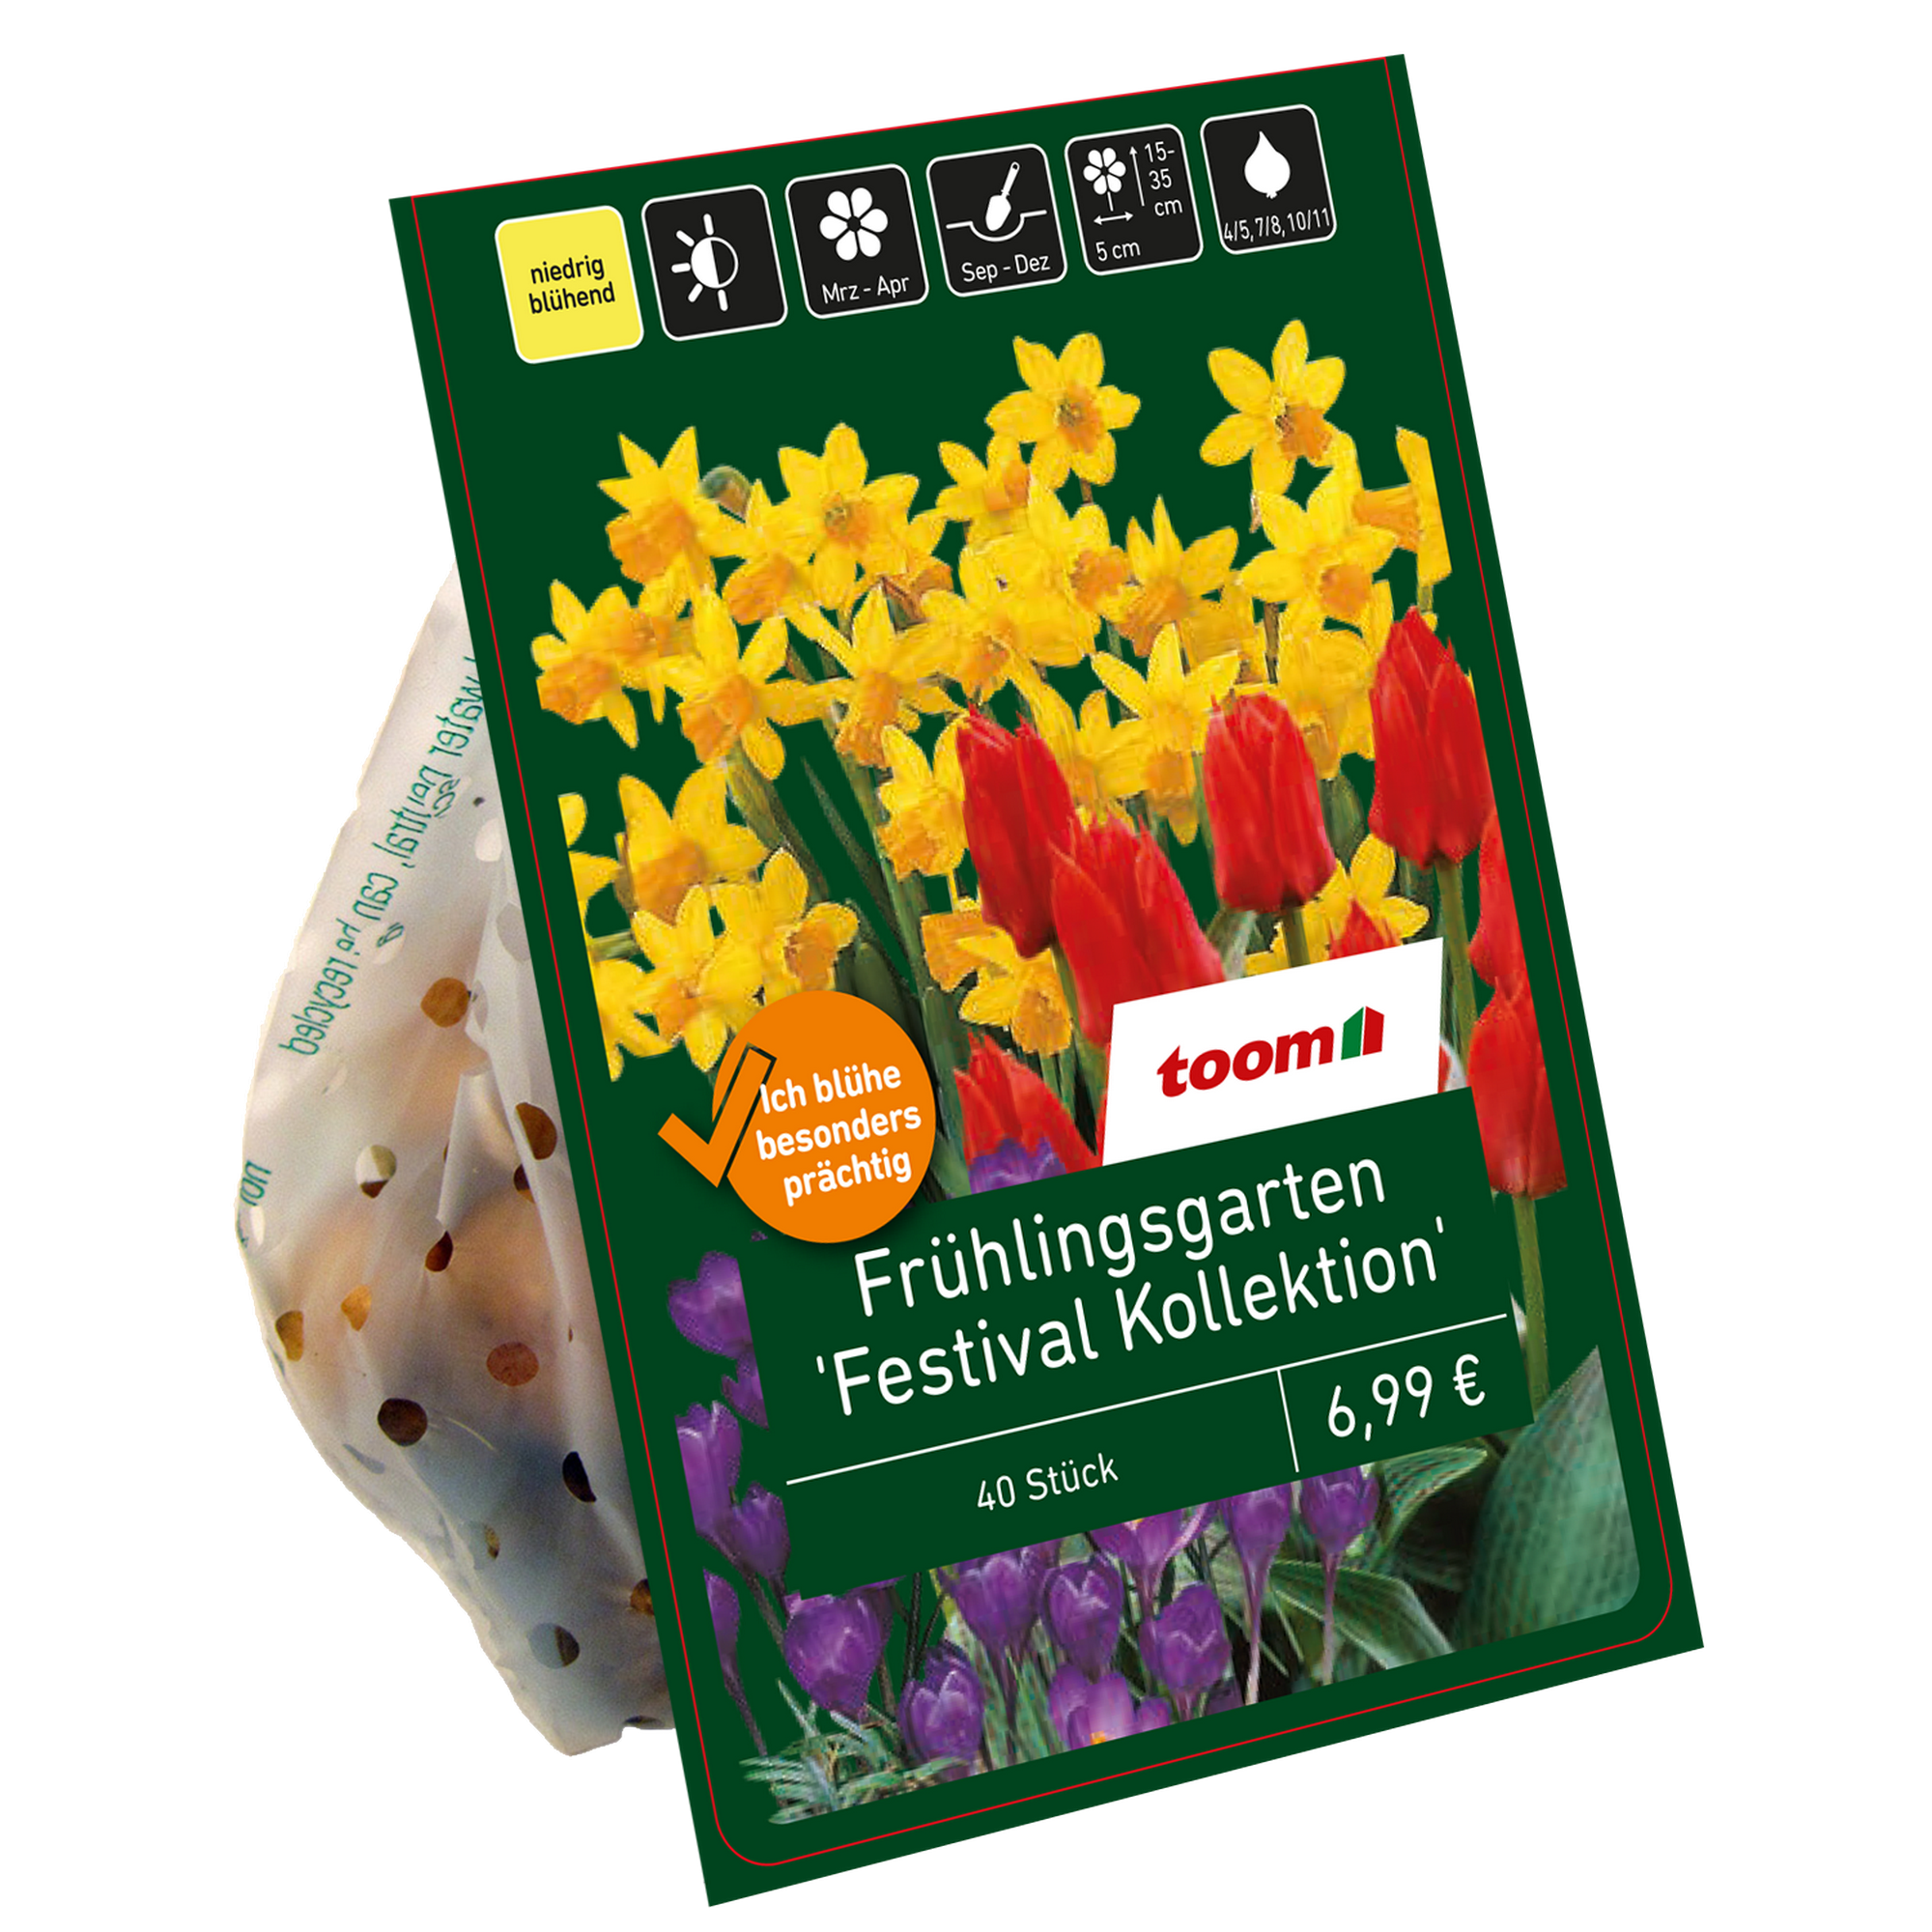 Frühlingsgarten 'Festival Kollektion' Mischung 50 Zwiebeln + product picture